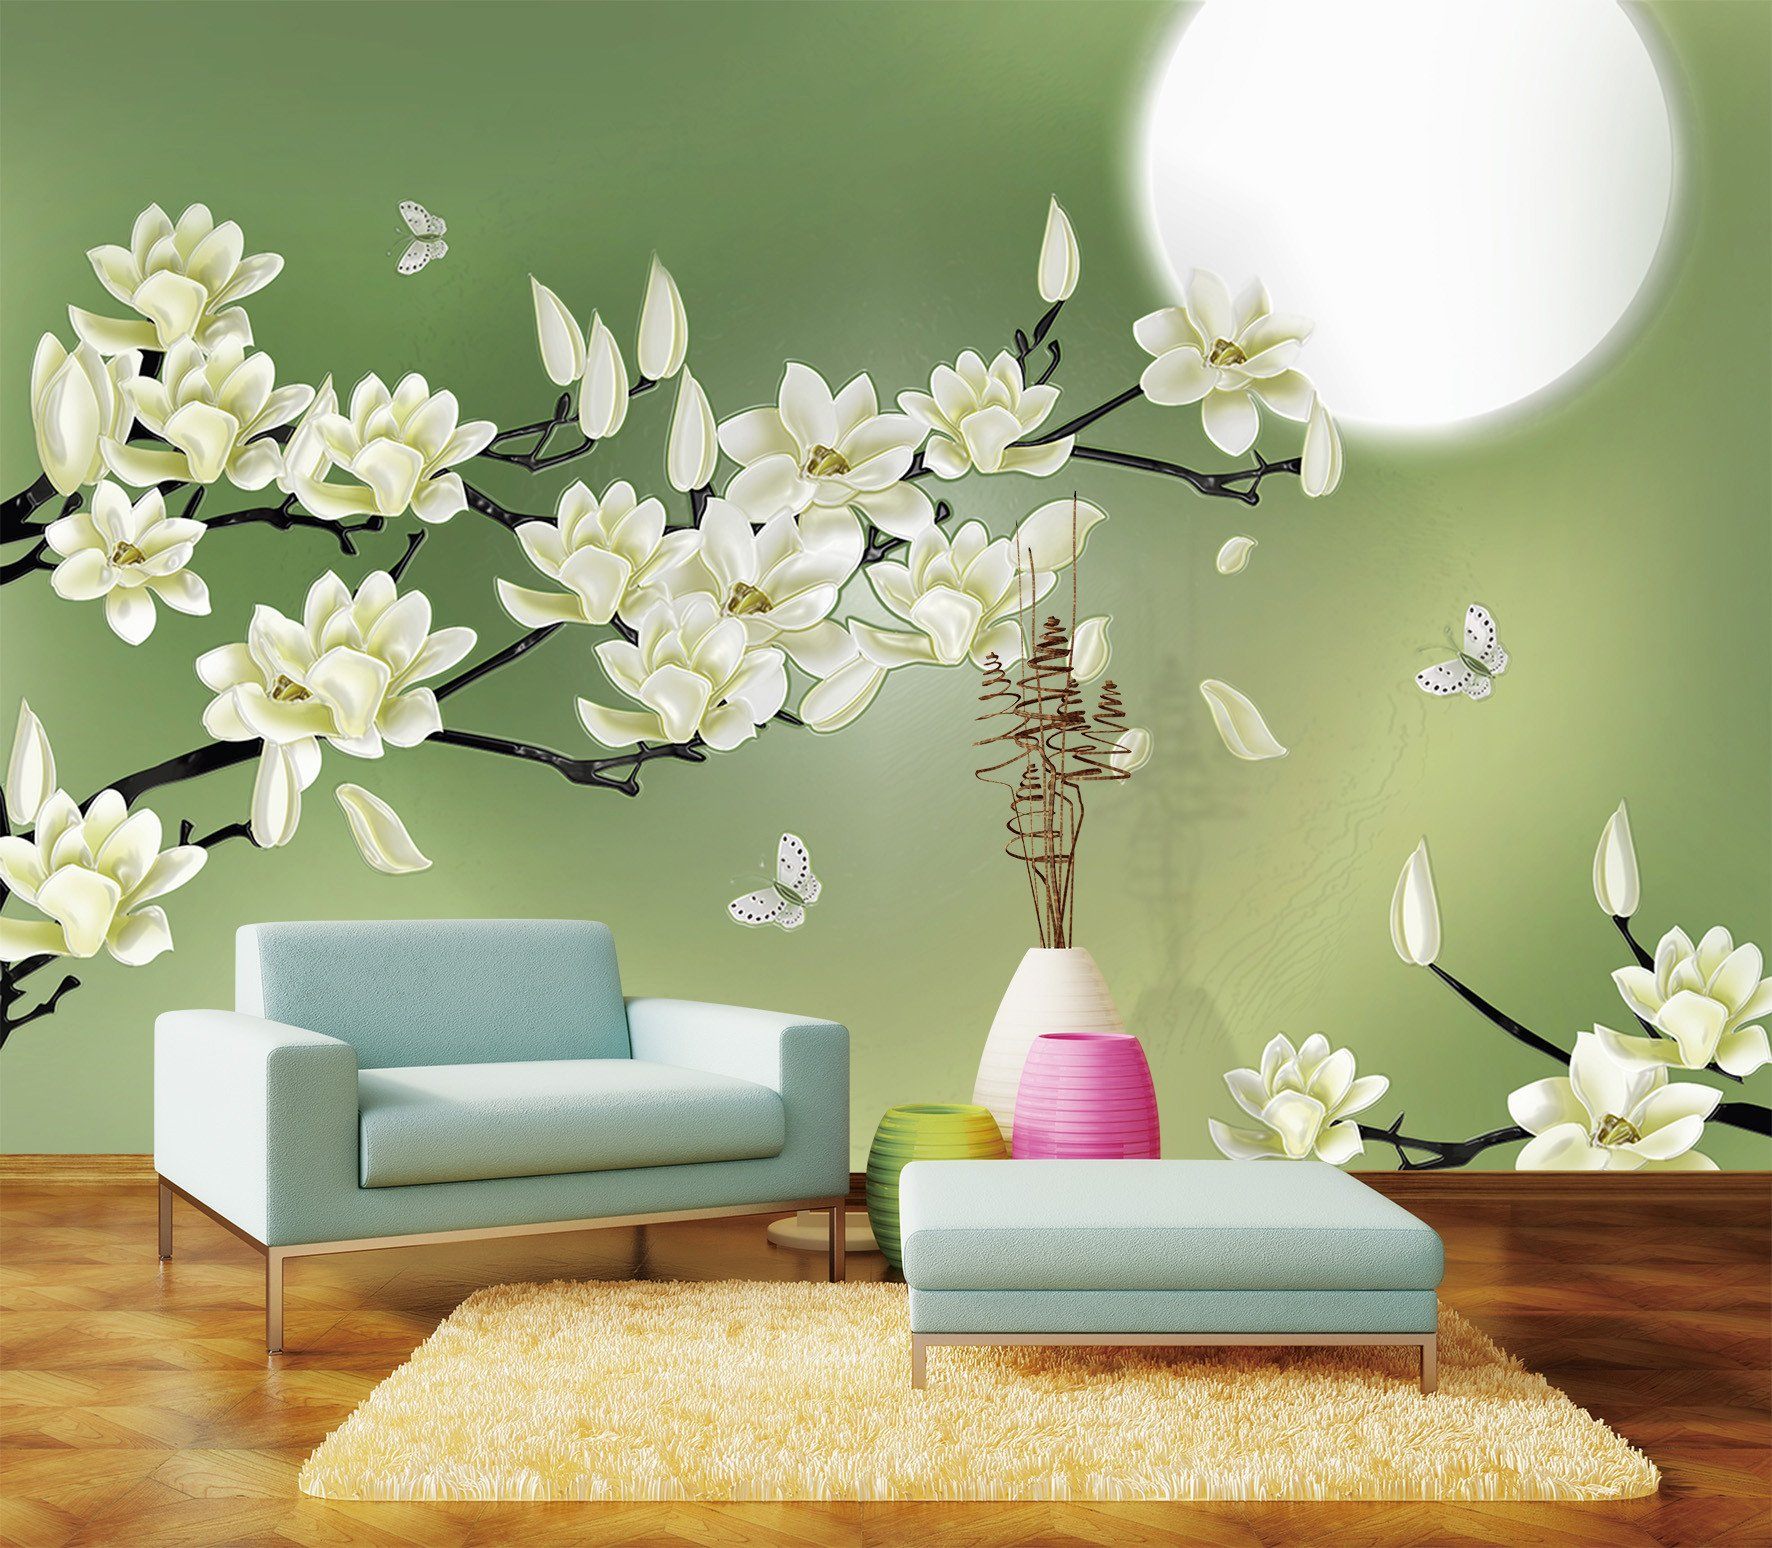 3D Pear Flower Moon 73 Wallpaper AJ Wallpaper 